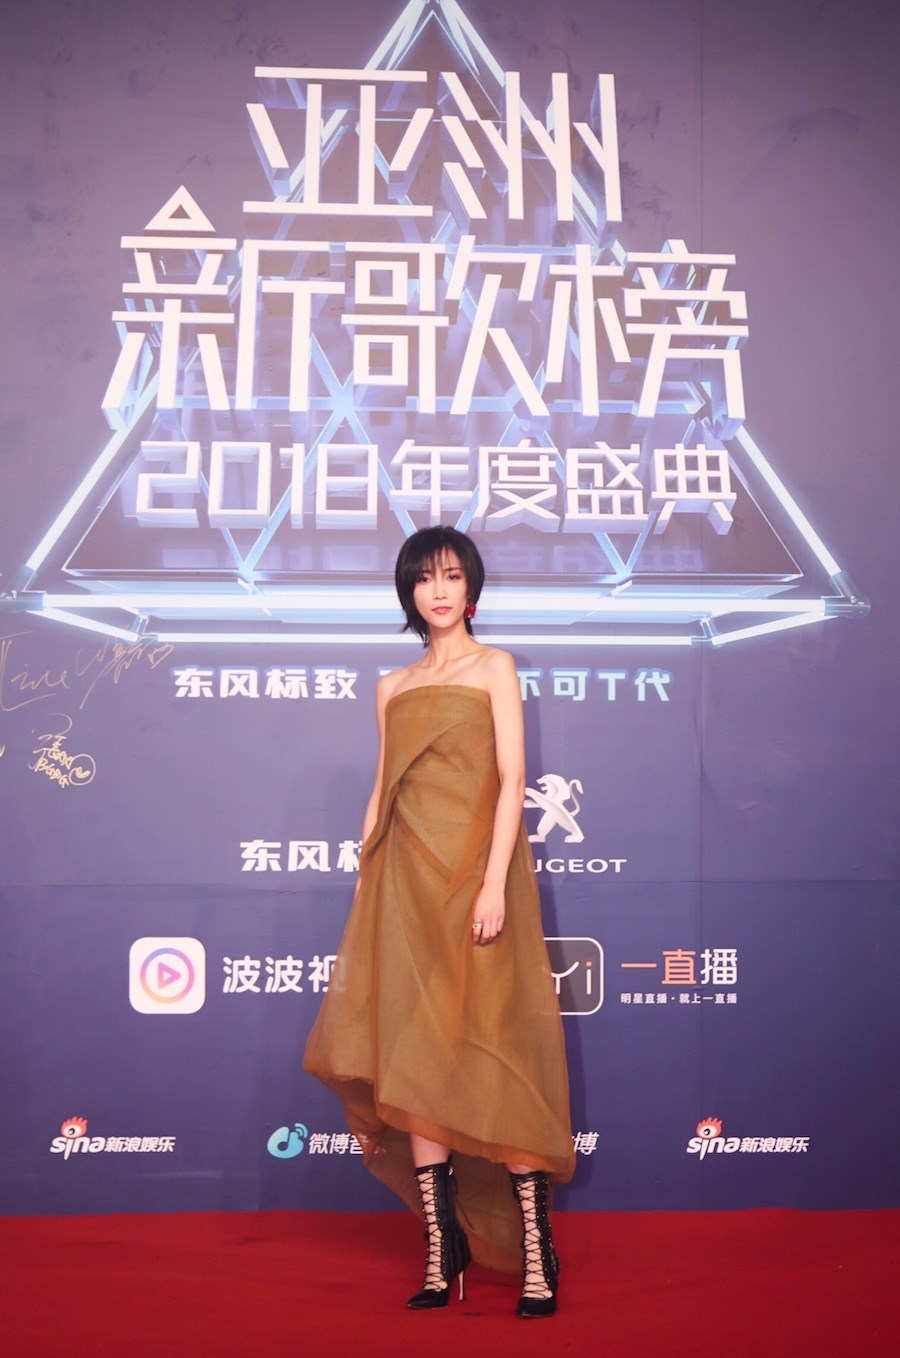 苏诗丁参加亚洲新歌榜 荣获年度媒体推荐歌手奖